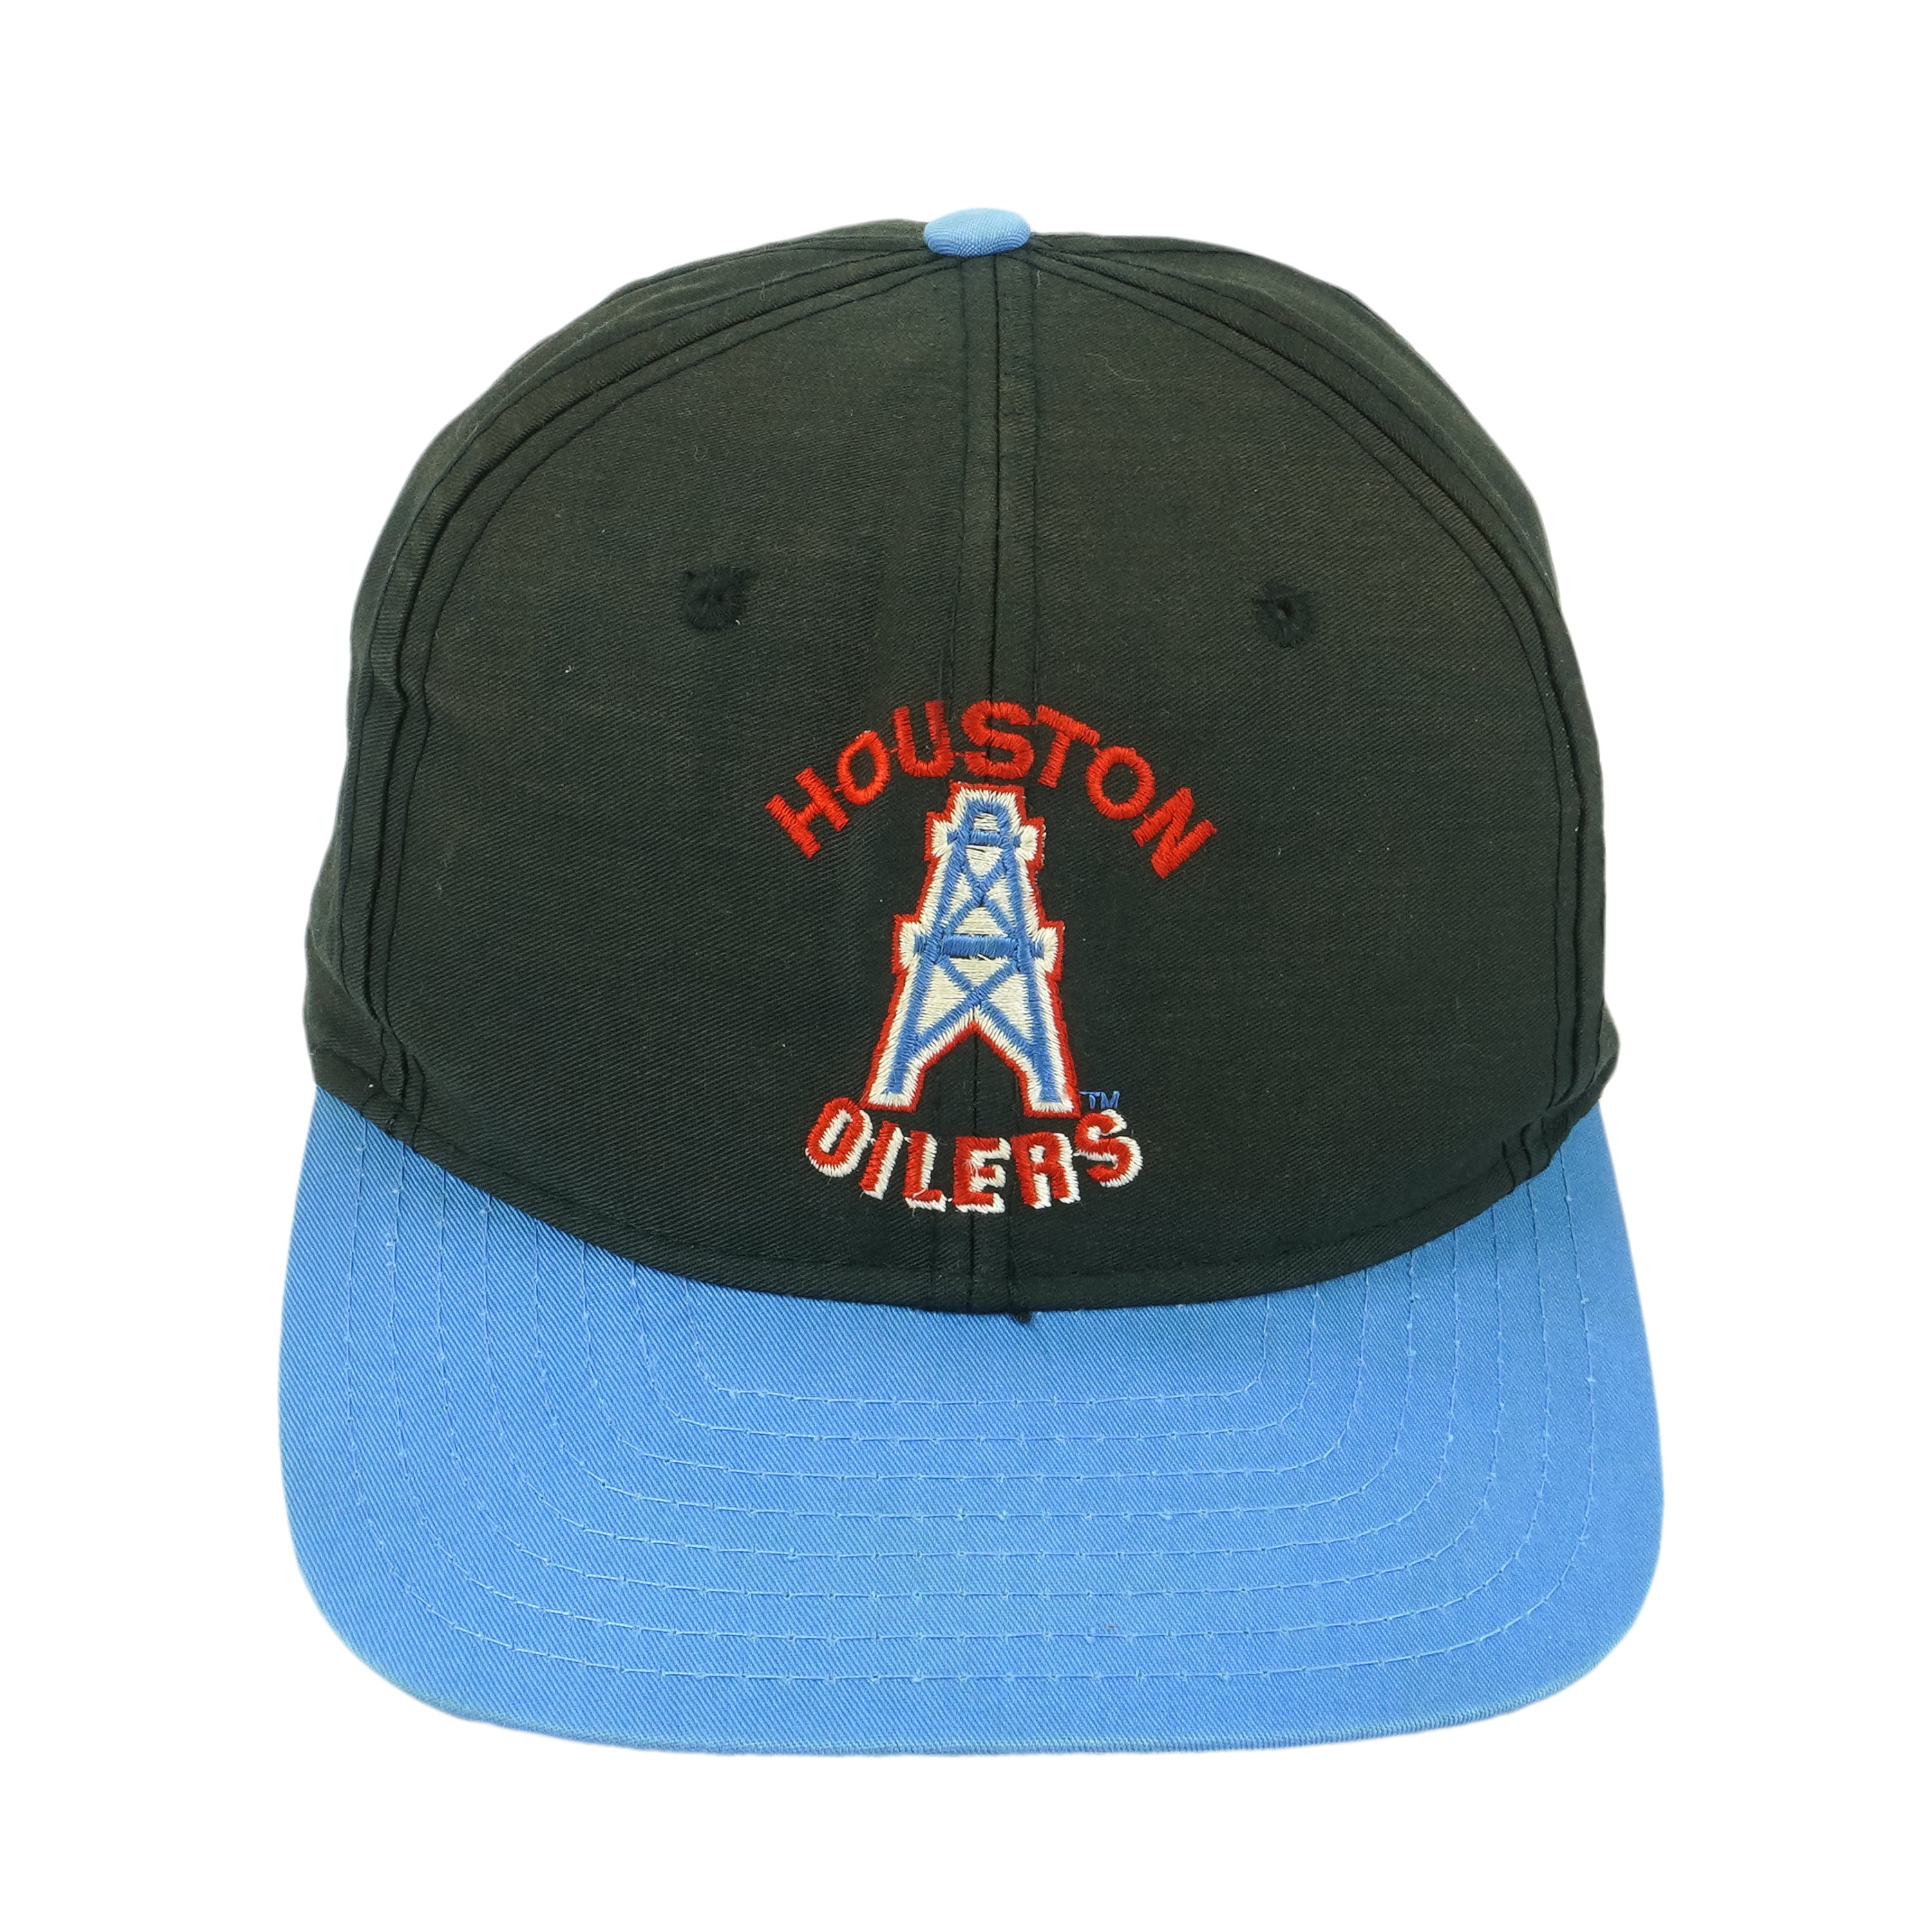 Vintage Houston Oilers Vintage 90s Esleep Baseball Jersey